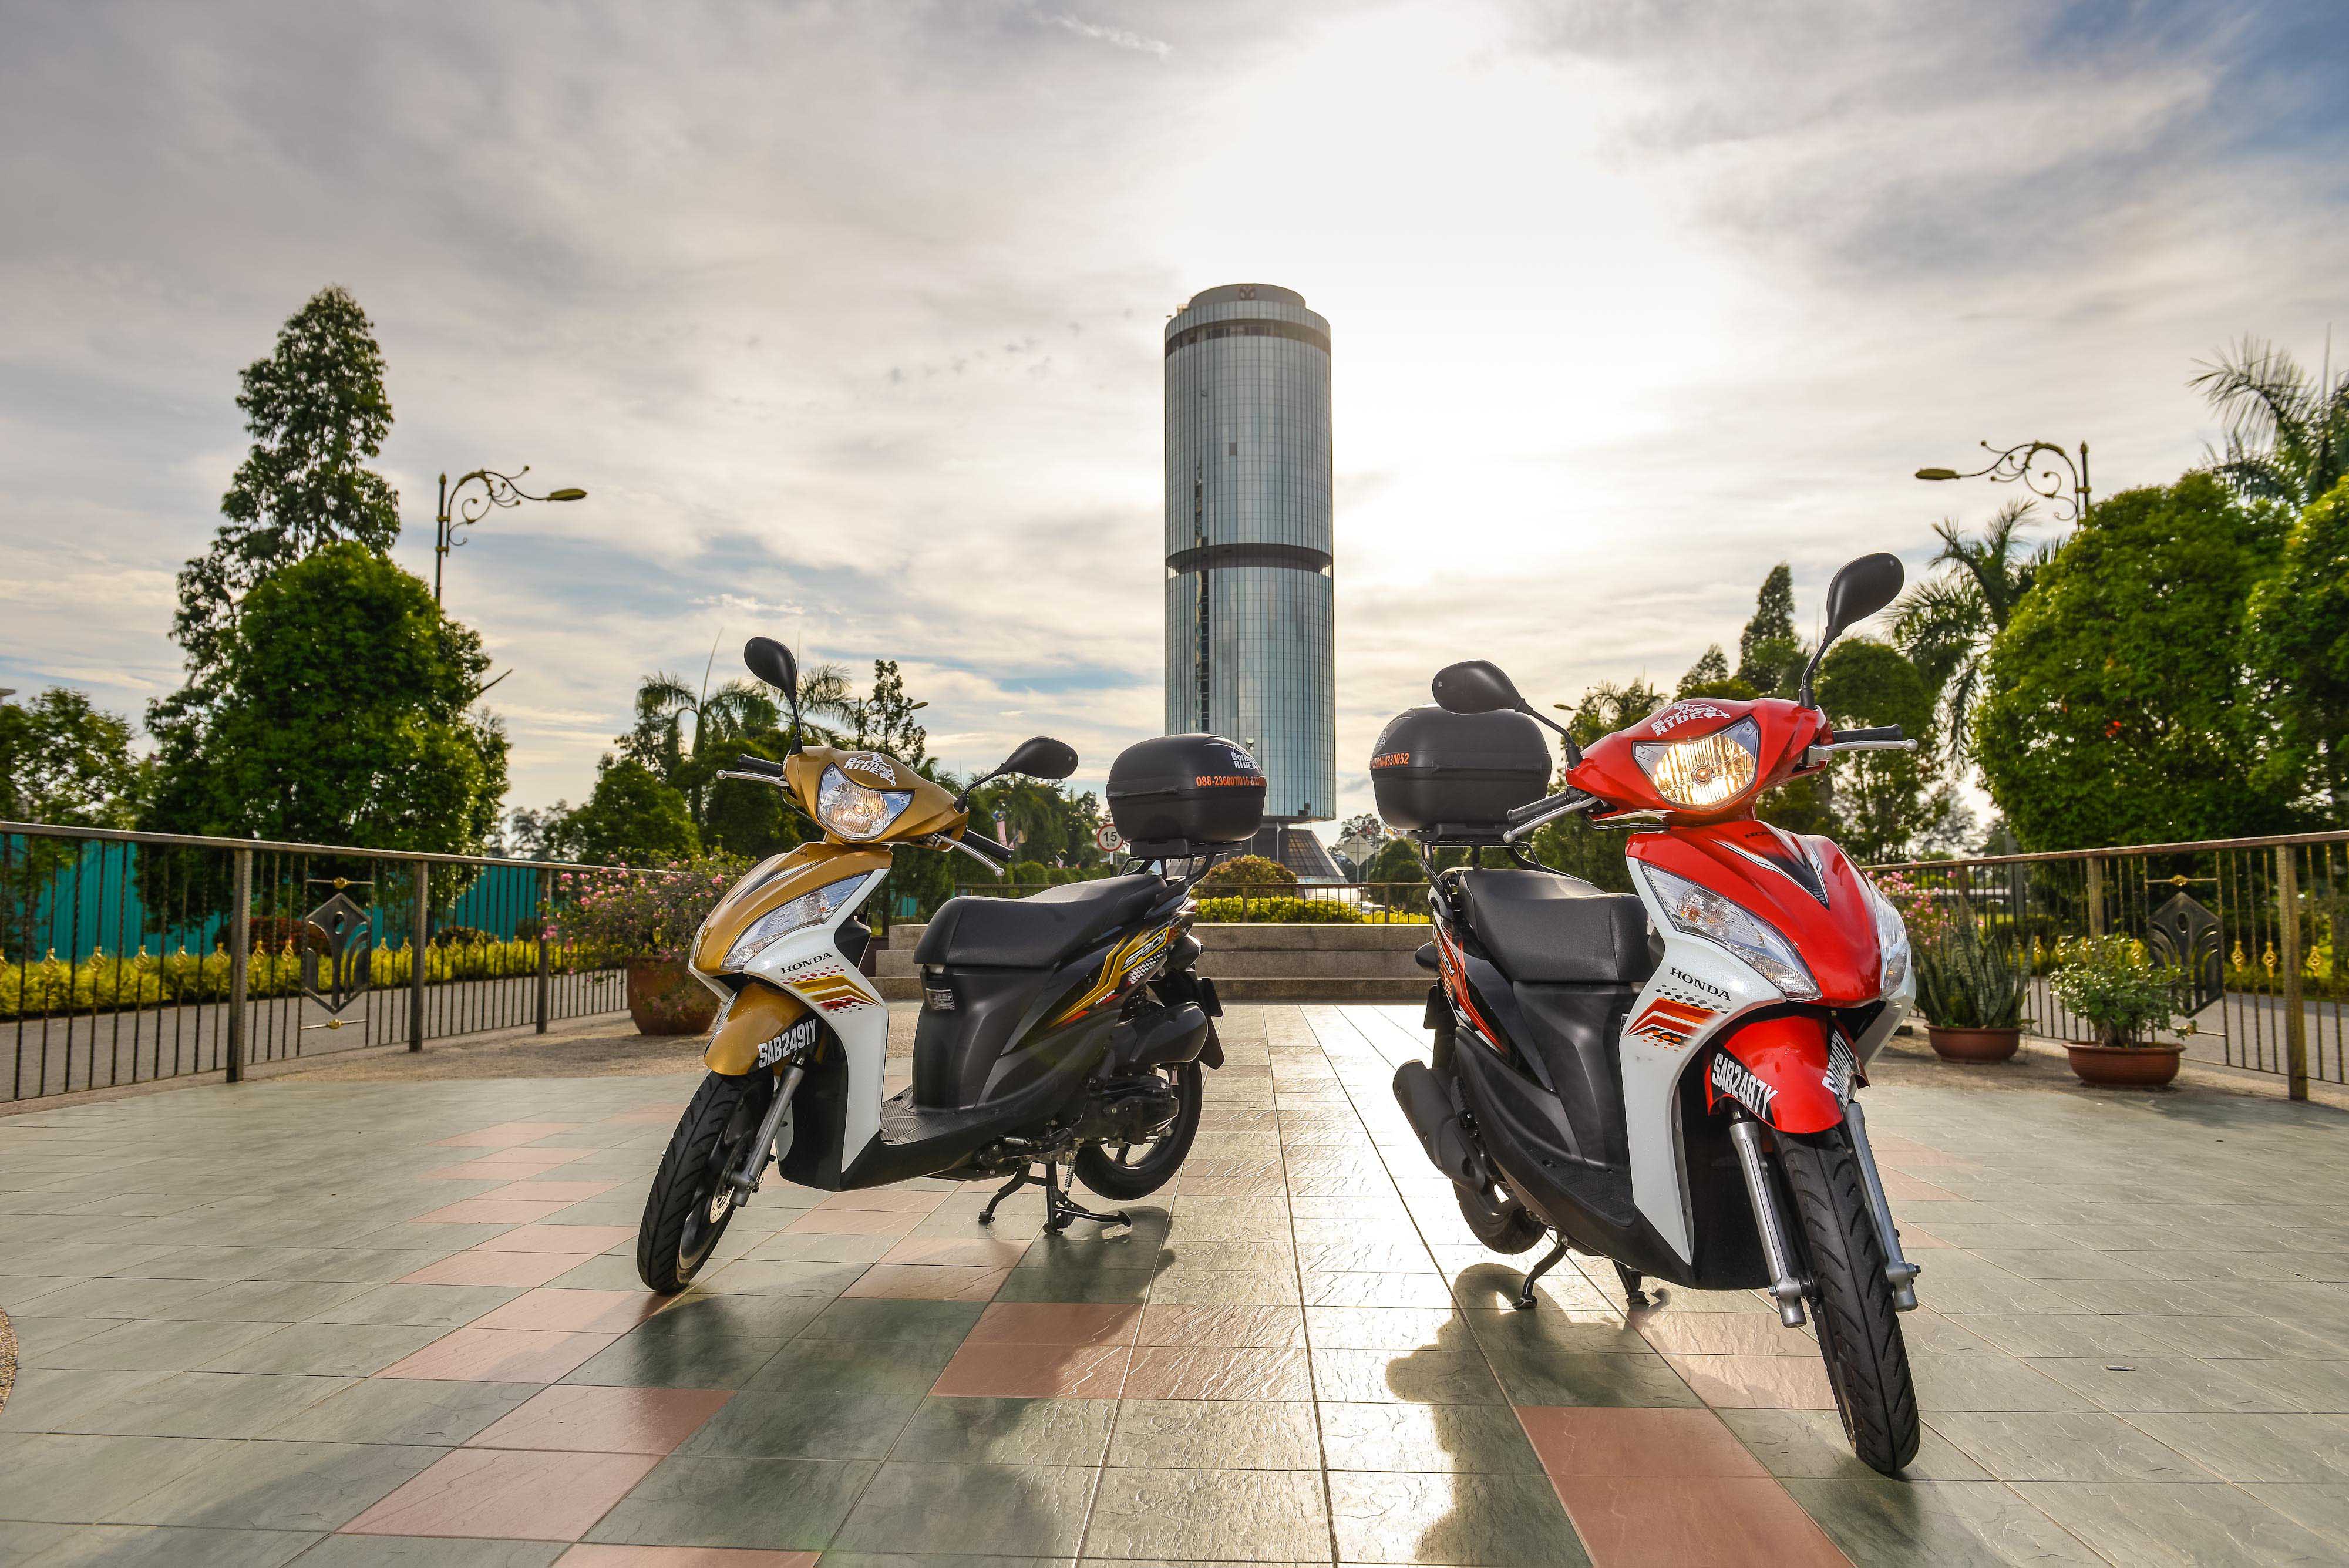 Borneoride motorbike at Tun Mustapha Tower Yayasan Sabah, Kota Kinabalu